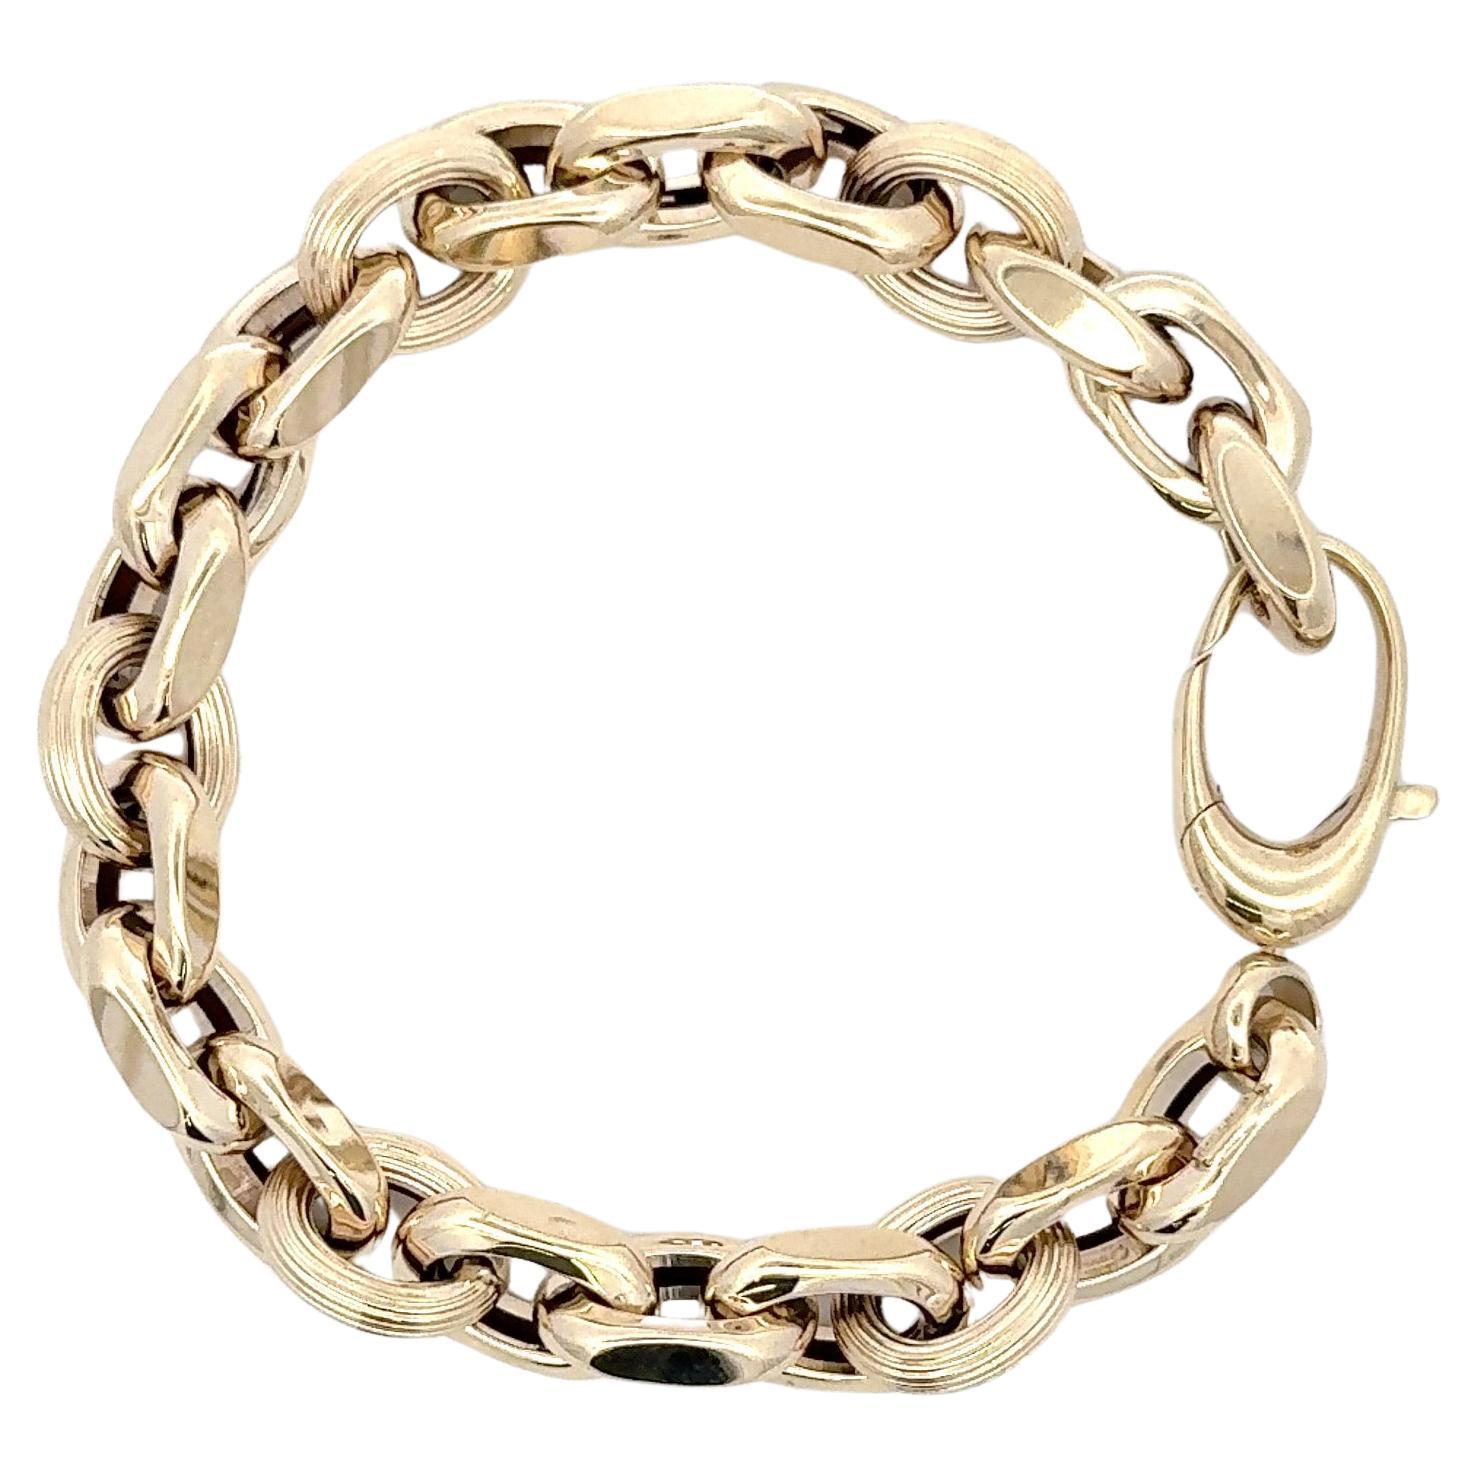 Fabriqué en Italie, ce bracelet en or jaune 14 carats présente des maillons de forme ovale, texturés et polis, pesant 11,4 grammes.